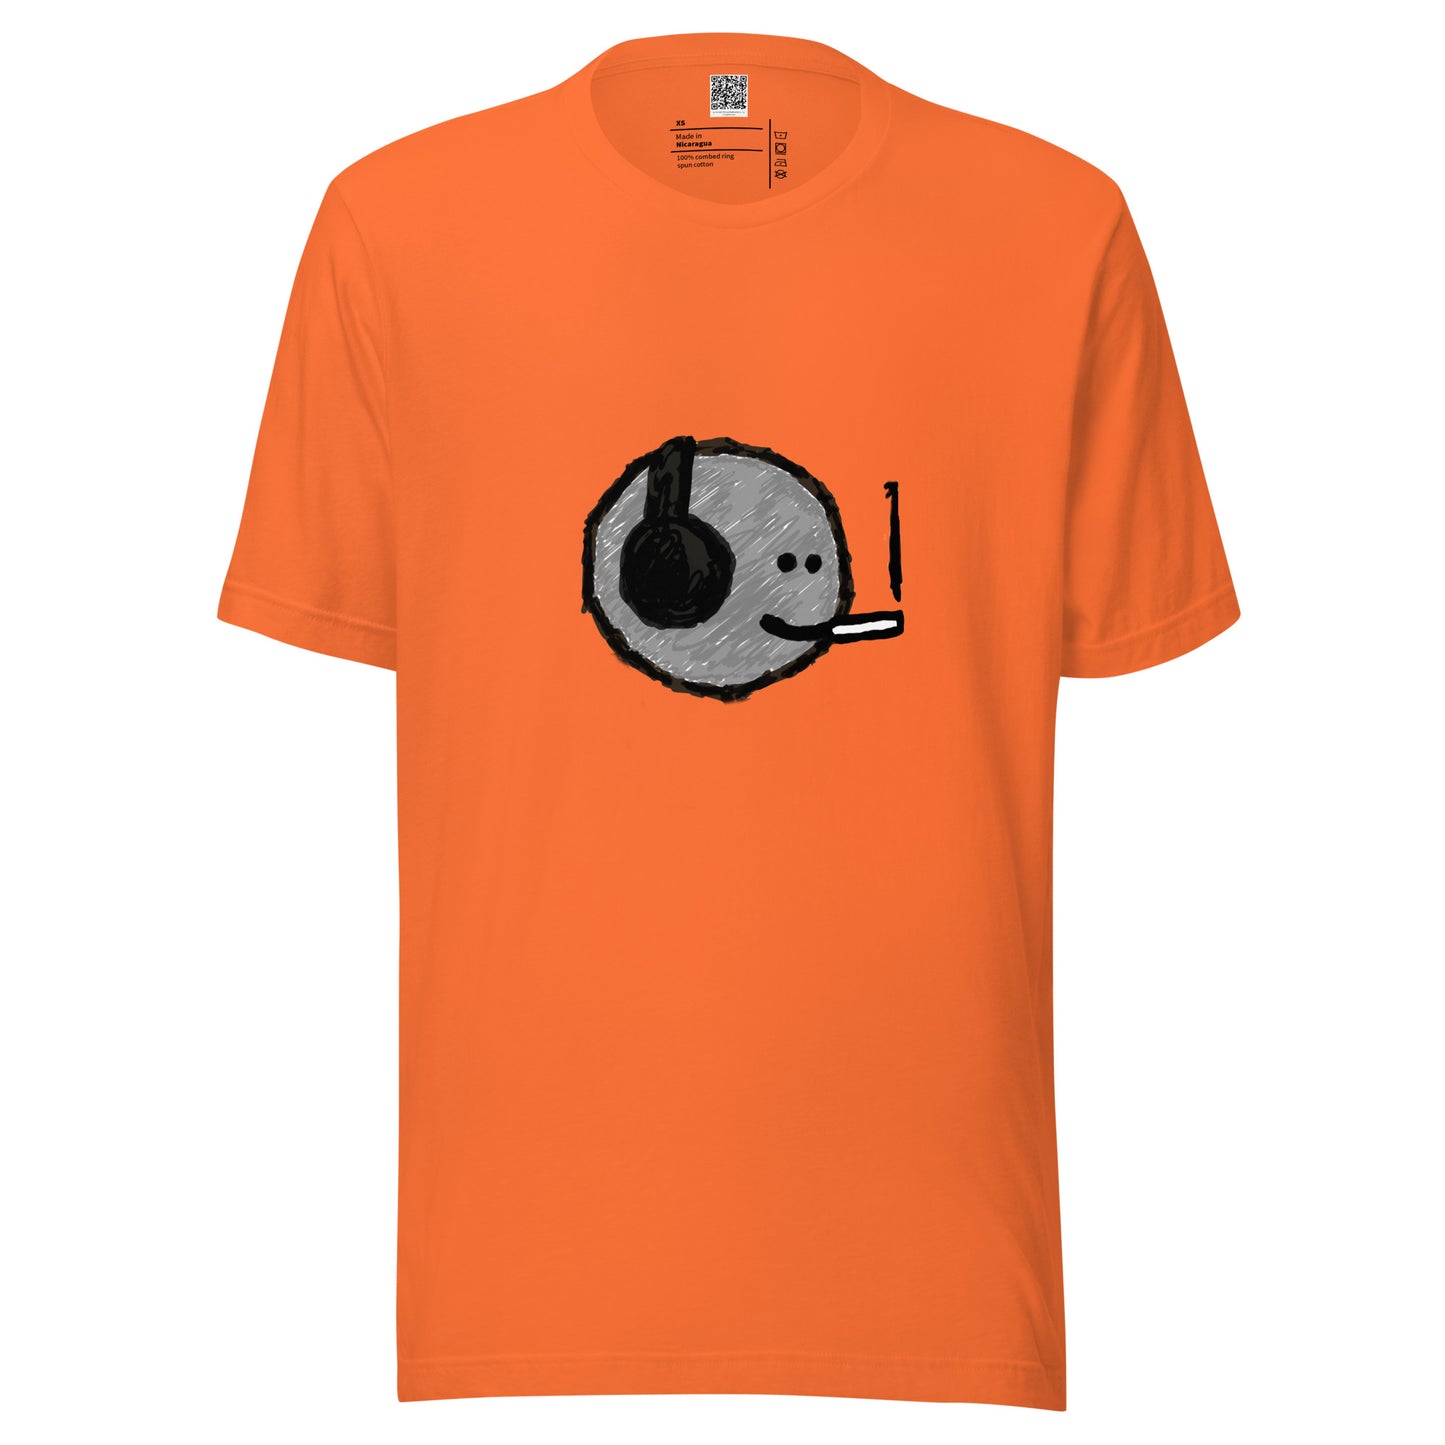 Unisex t-shirt - mfers charcoal smoker